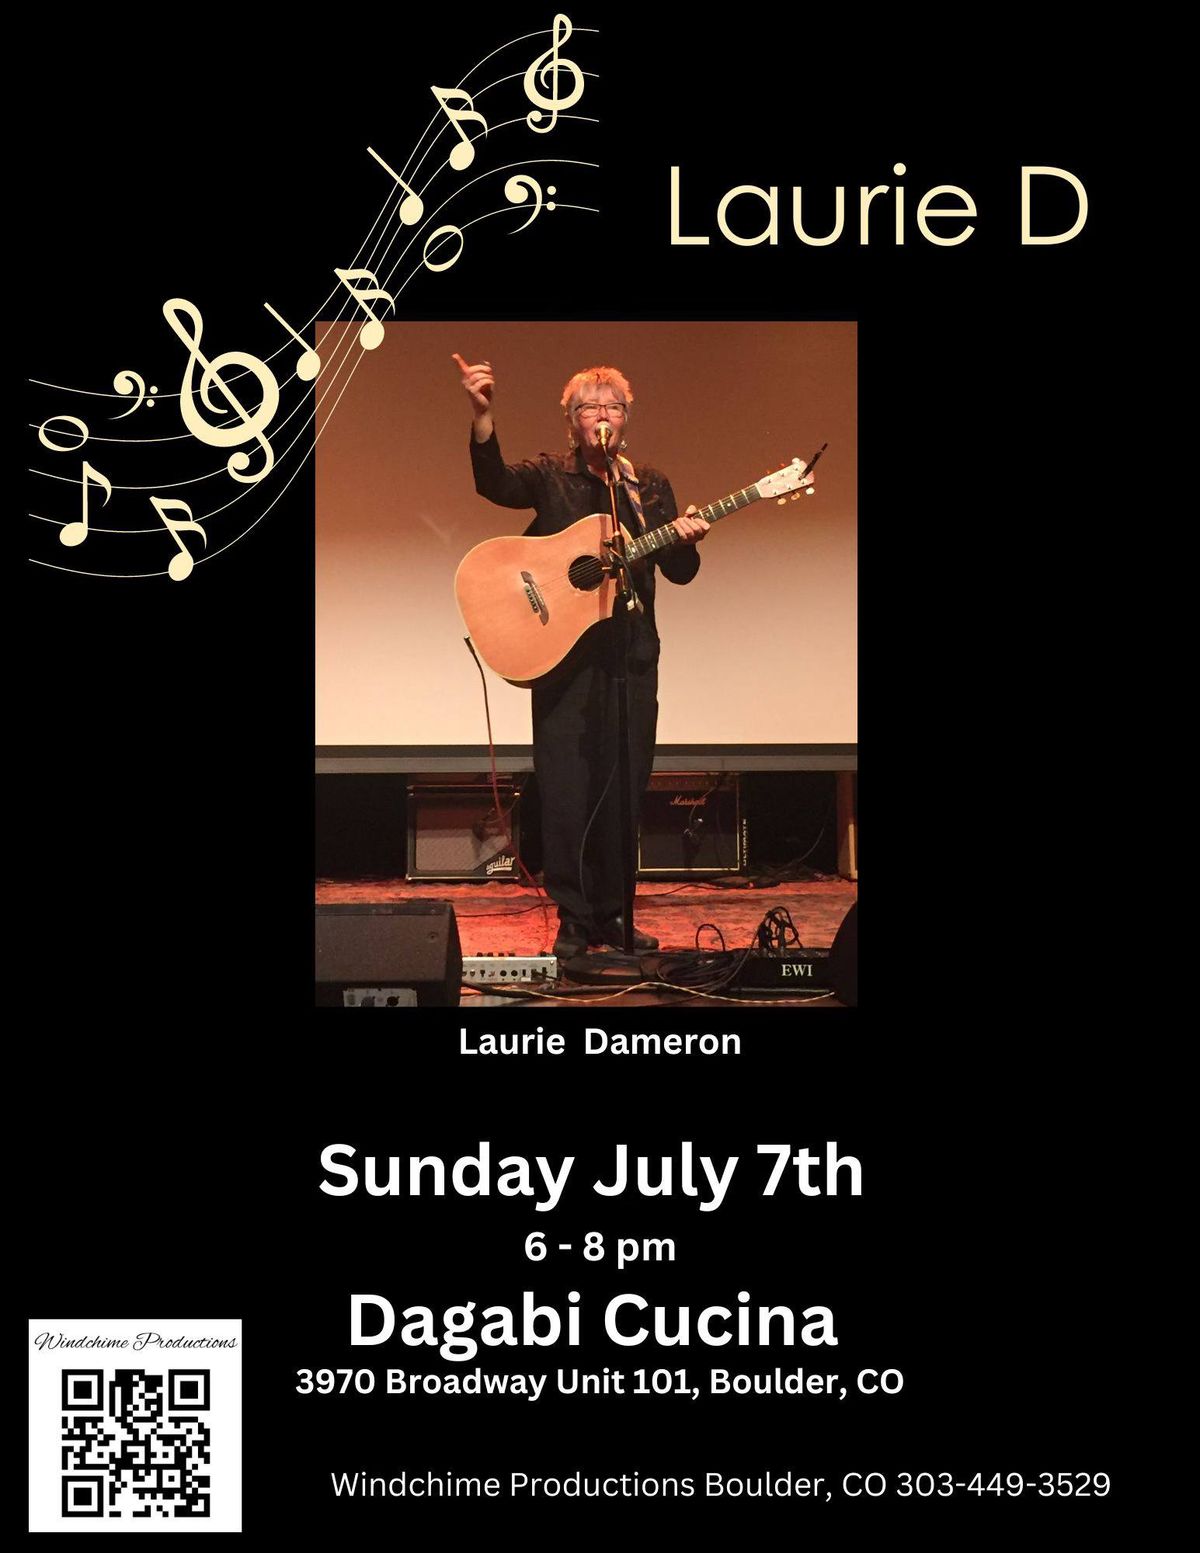 Laurie D at Dugabi Cucina Boulder! 